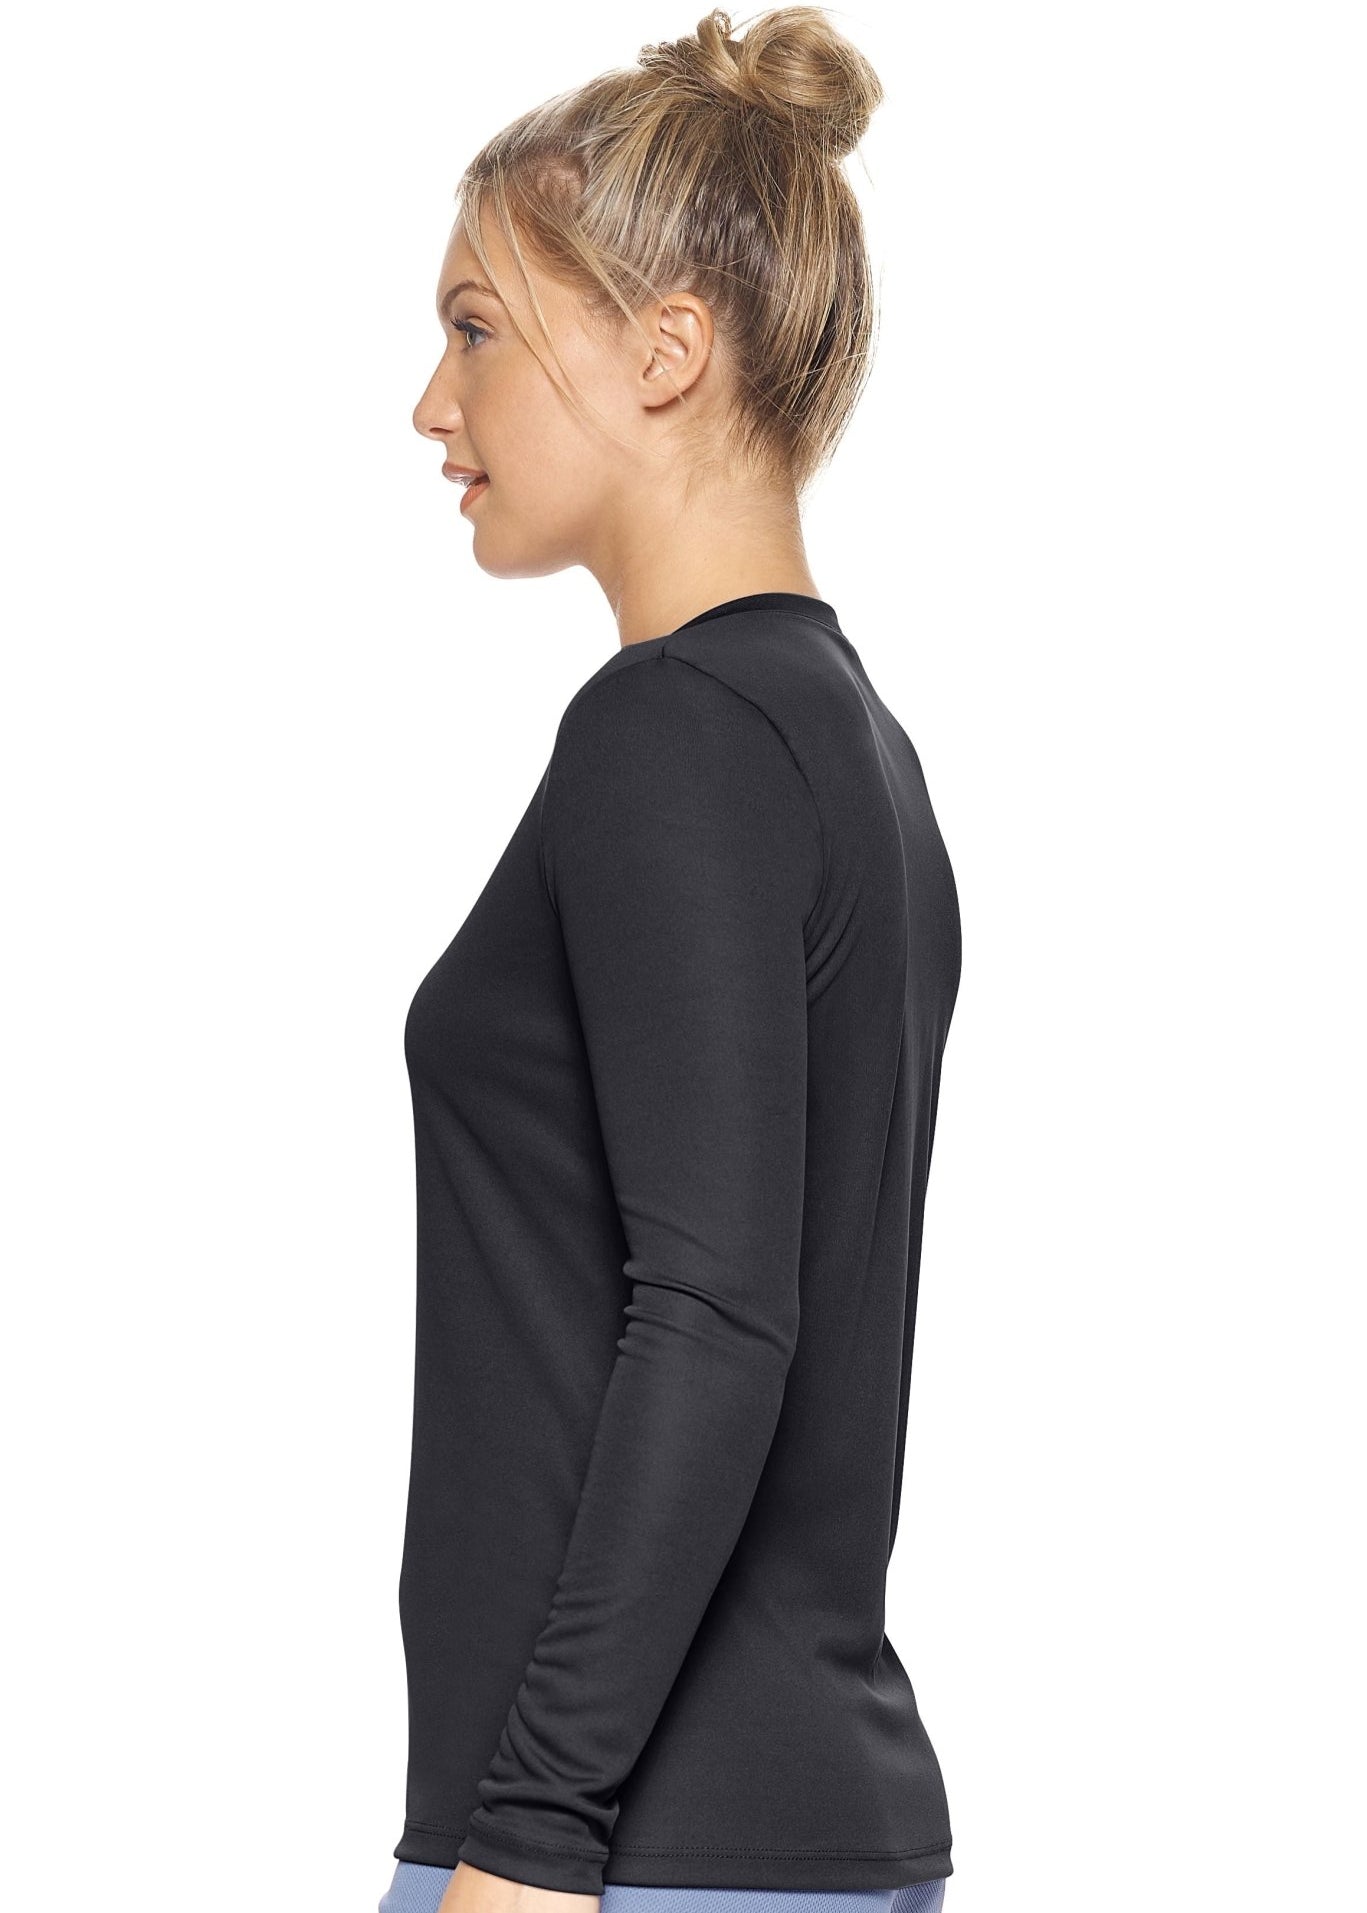 Expert Brand DriMax Activewear V-Neck Long Sleeve - DressbarnActivewear